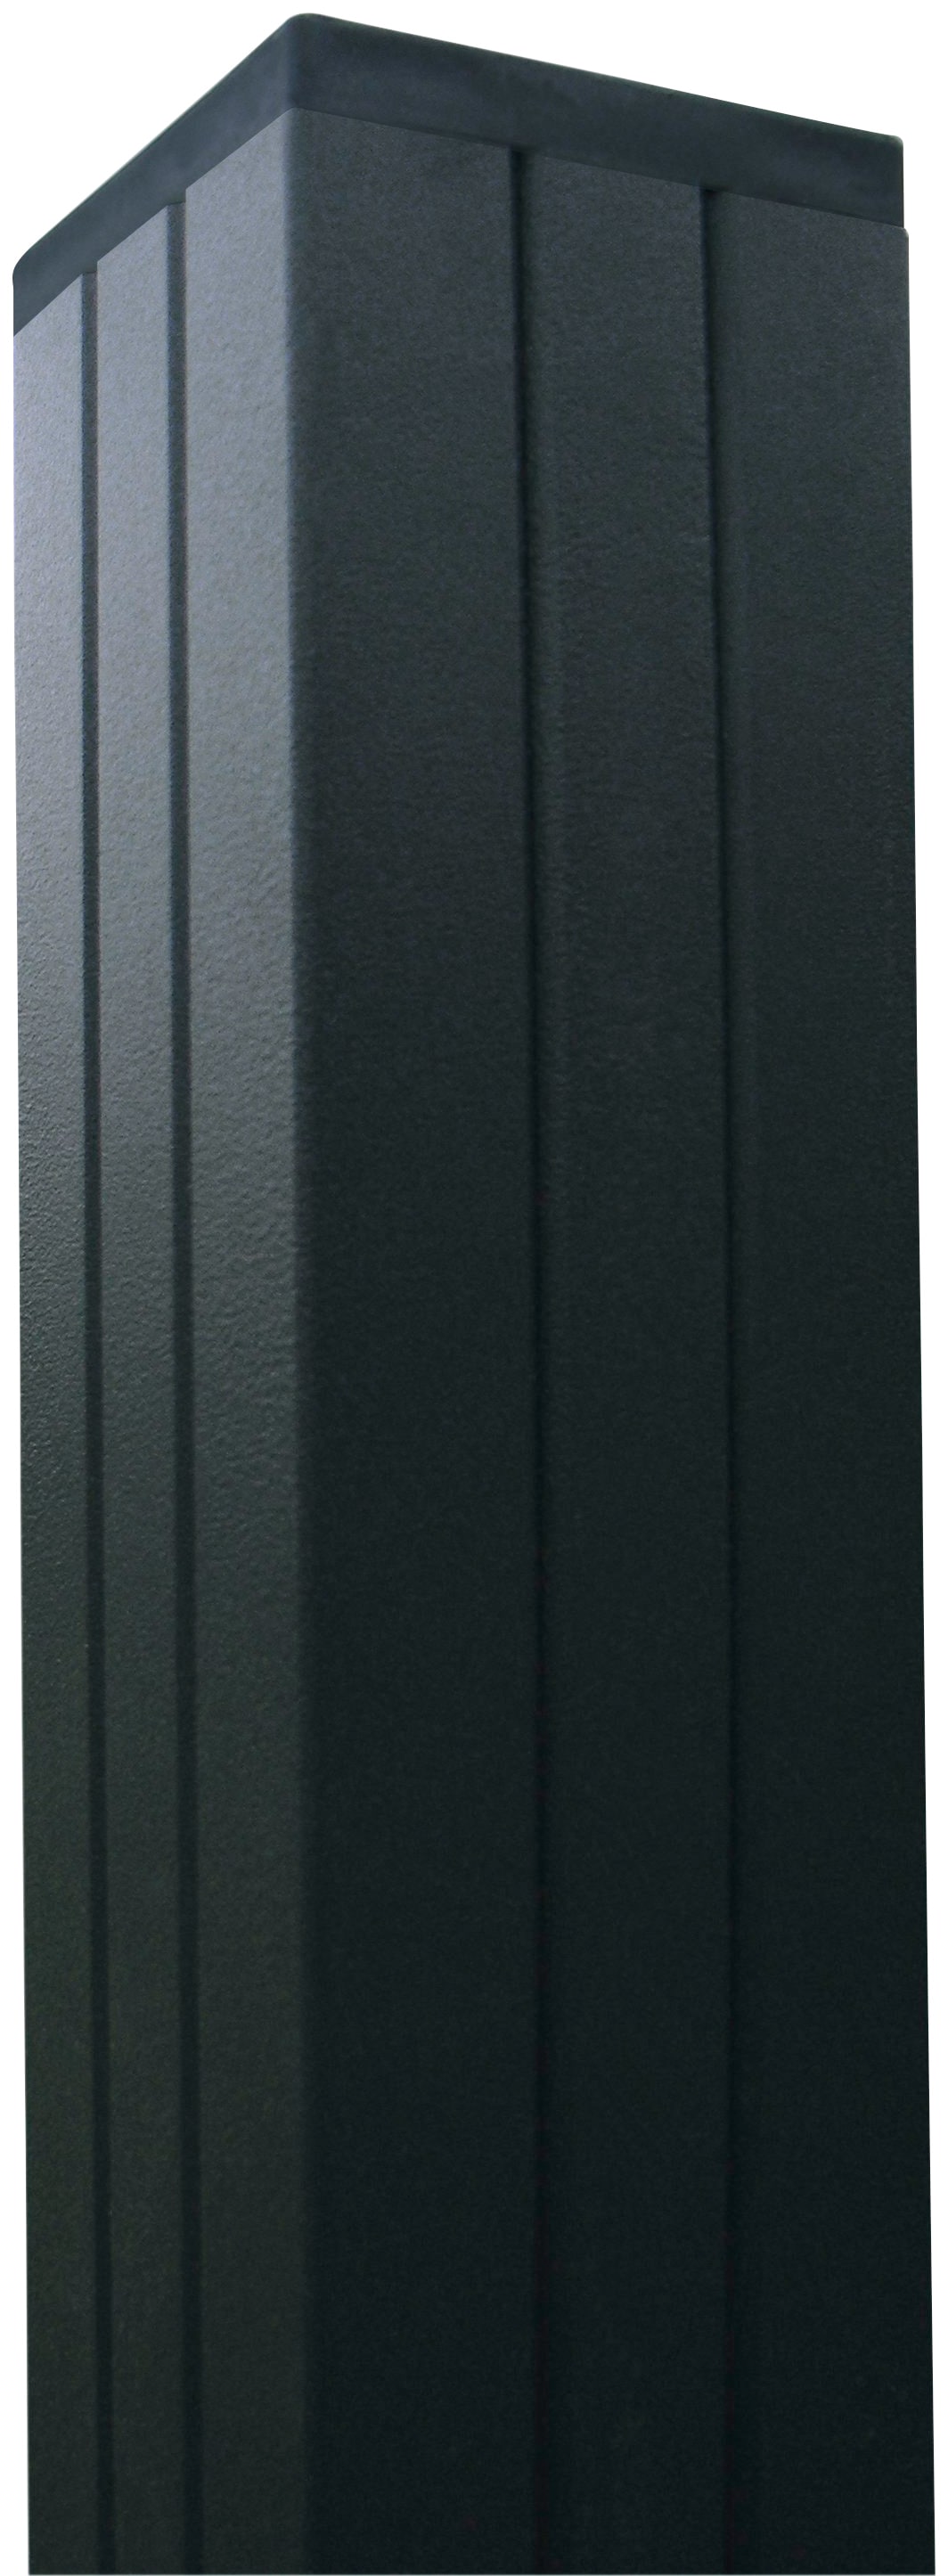 Kiehn-Holz Sichtschutzelement, LxH: 540x180 cm, Pfosten zum Aufschrauben